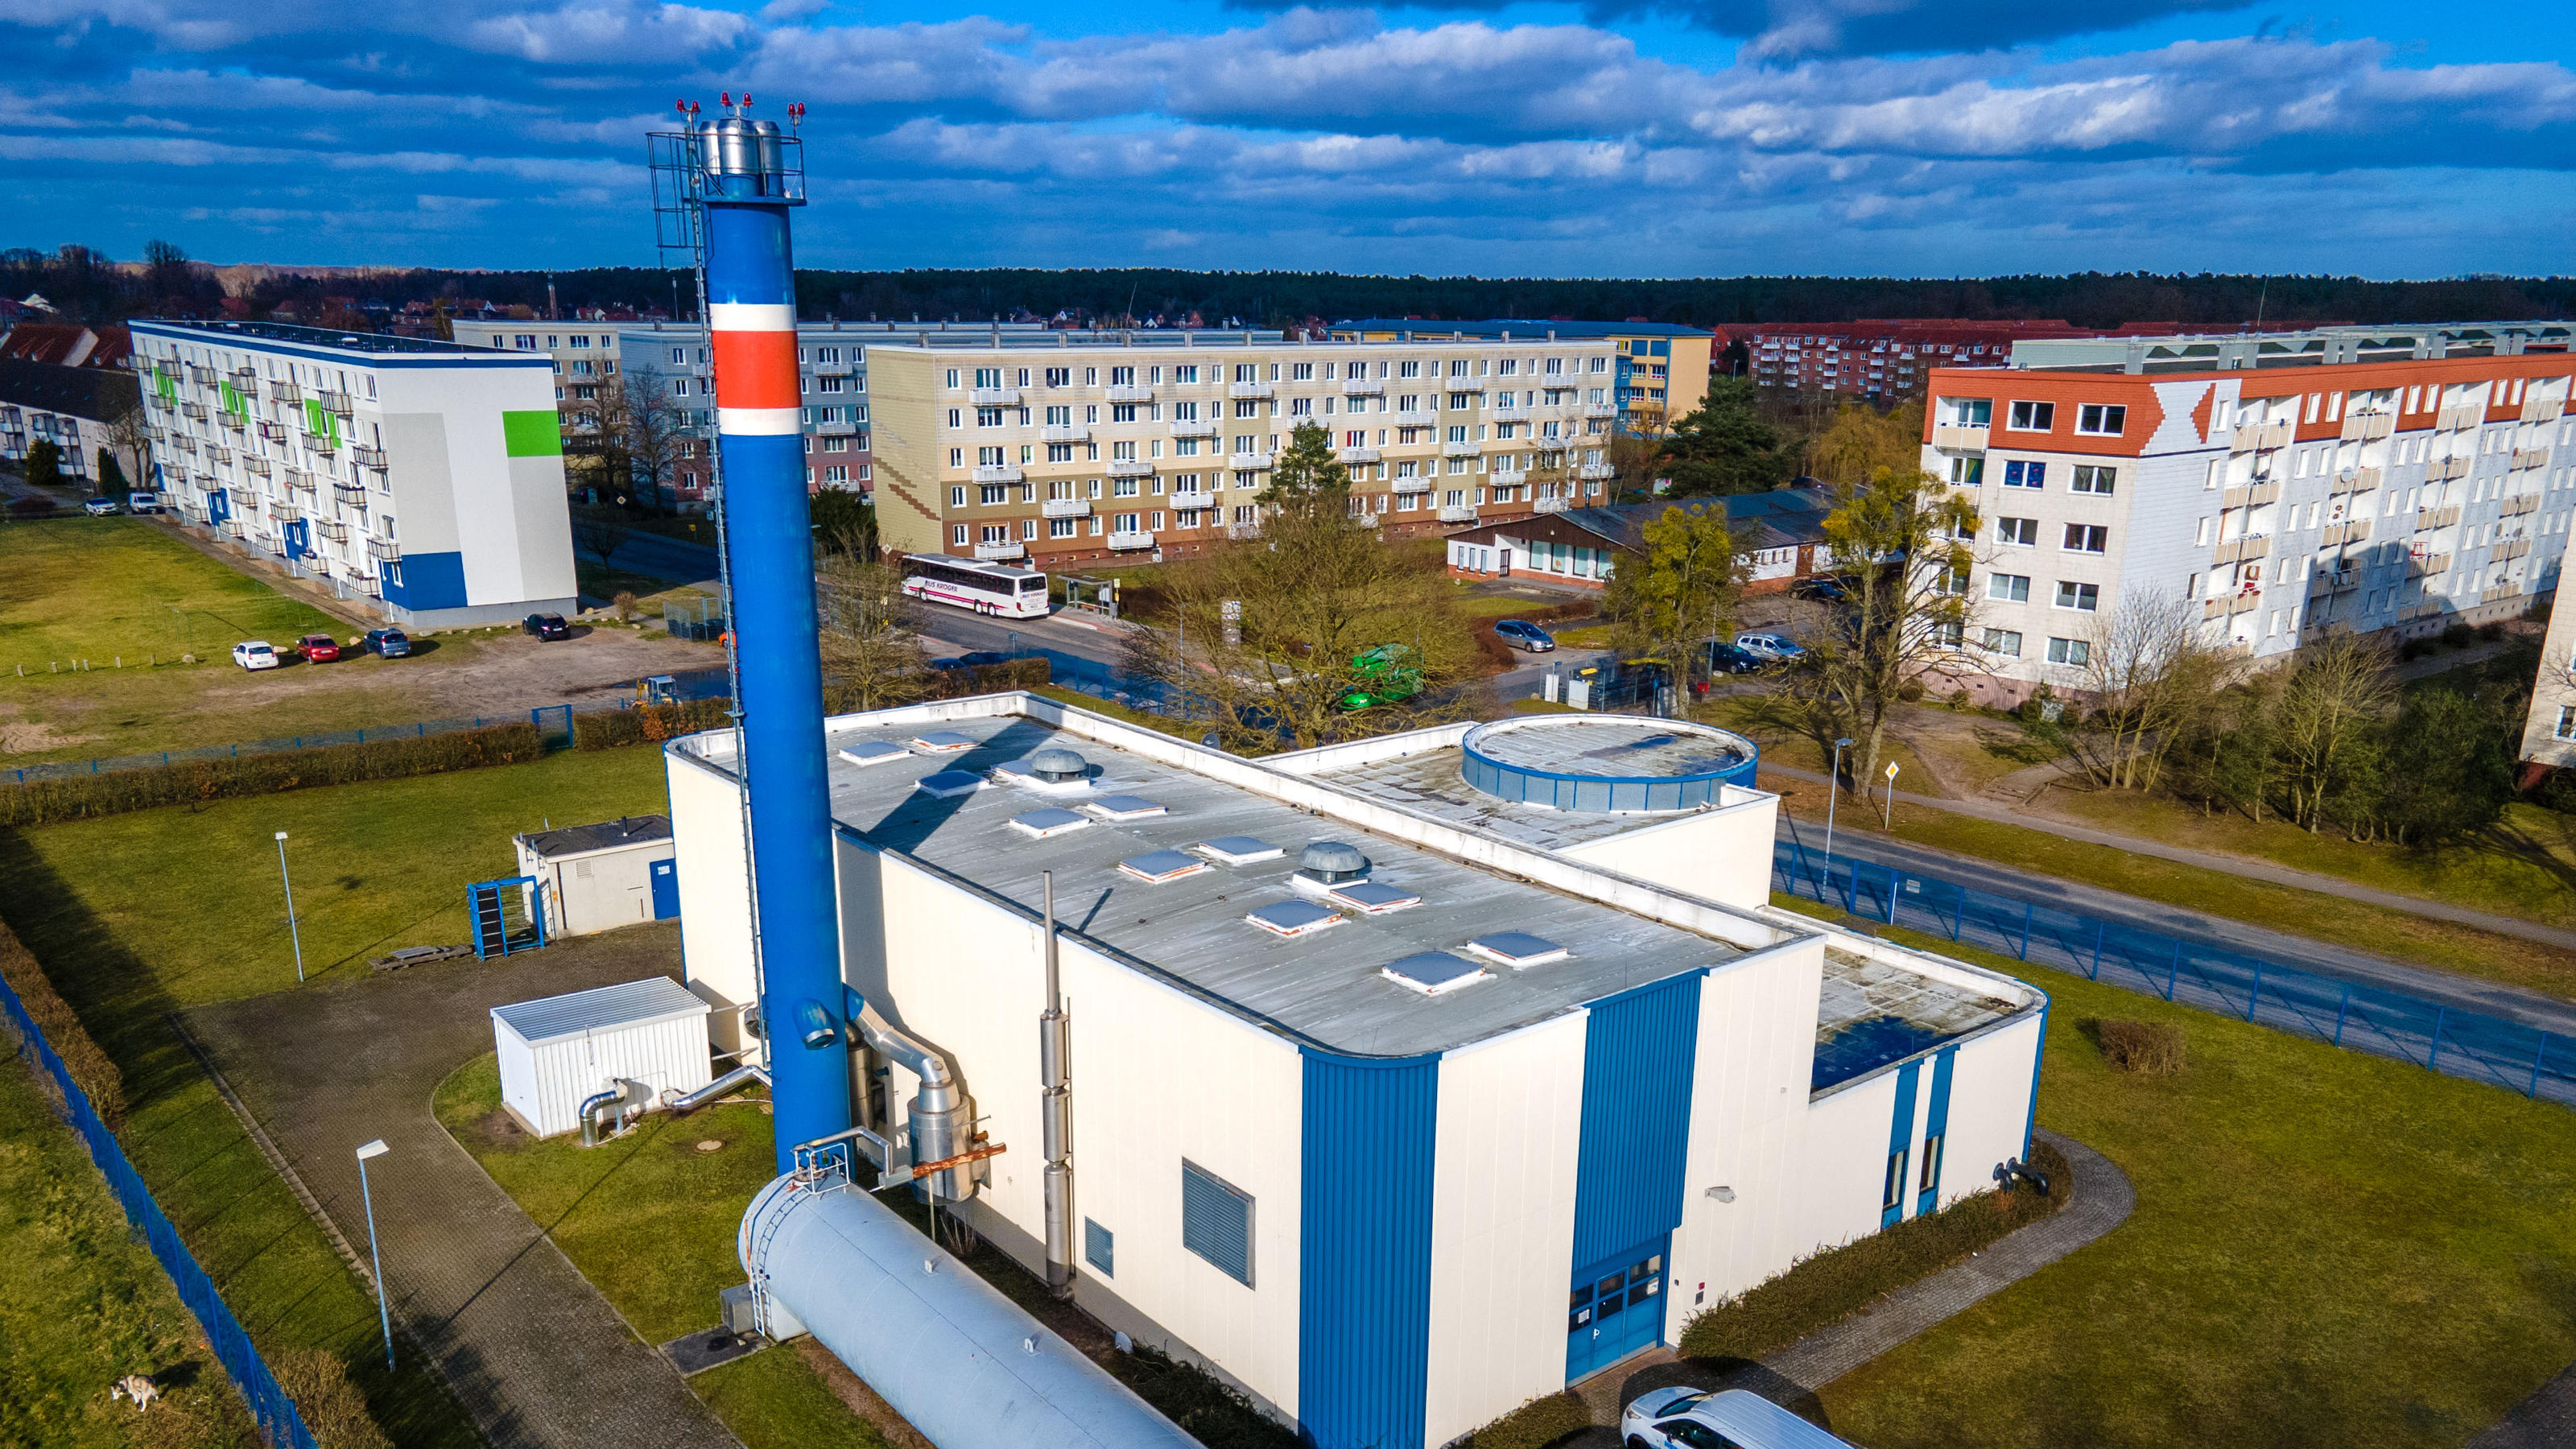 Das älteste deutsche Erdwärmekraftwerk: Das am 12.11.2003 offiziell ans Netz gegangene Geothermie-Kraftwerk erzeugt bereits seit zwanzig Jahren jährlich 1.400 Megawattstunden Strom für bis zu 500 Haushalte.